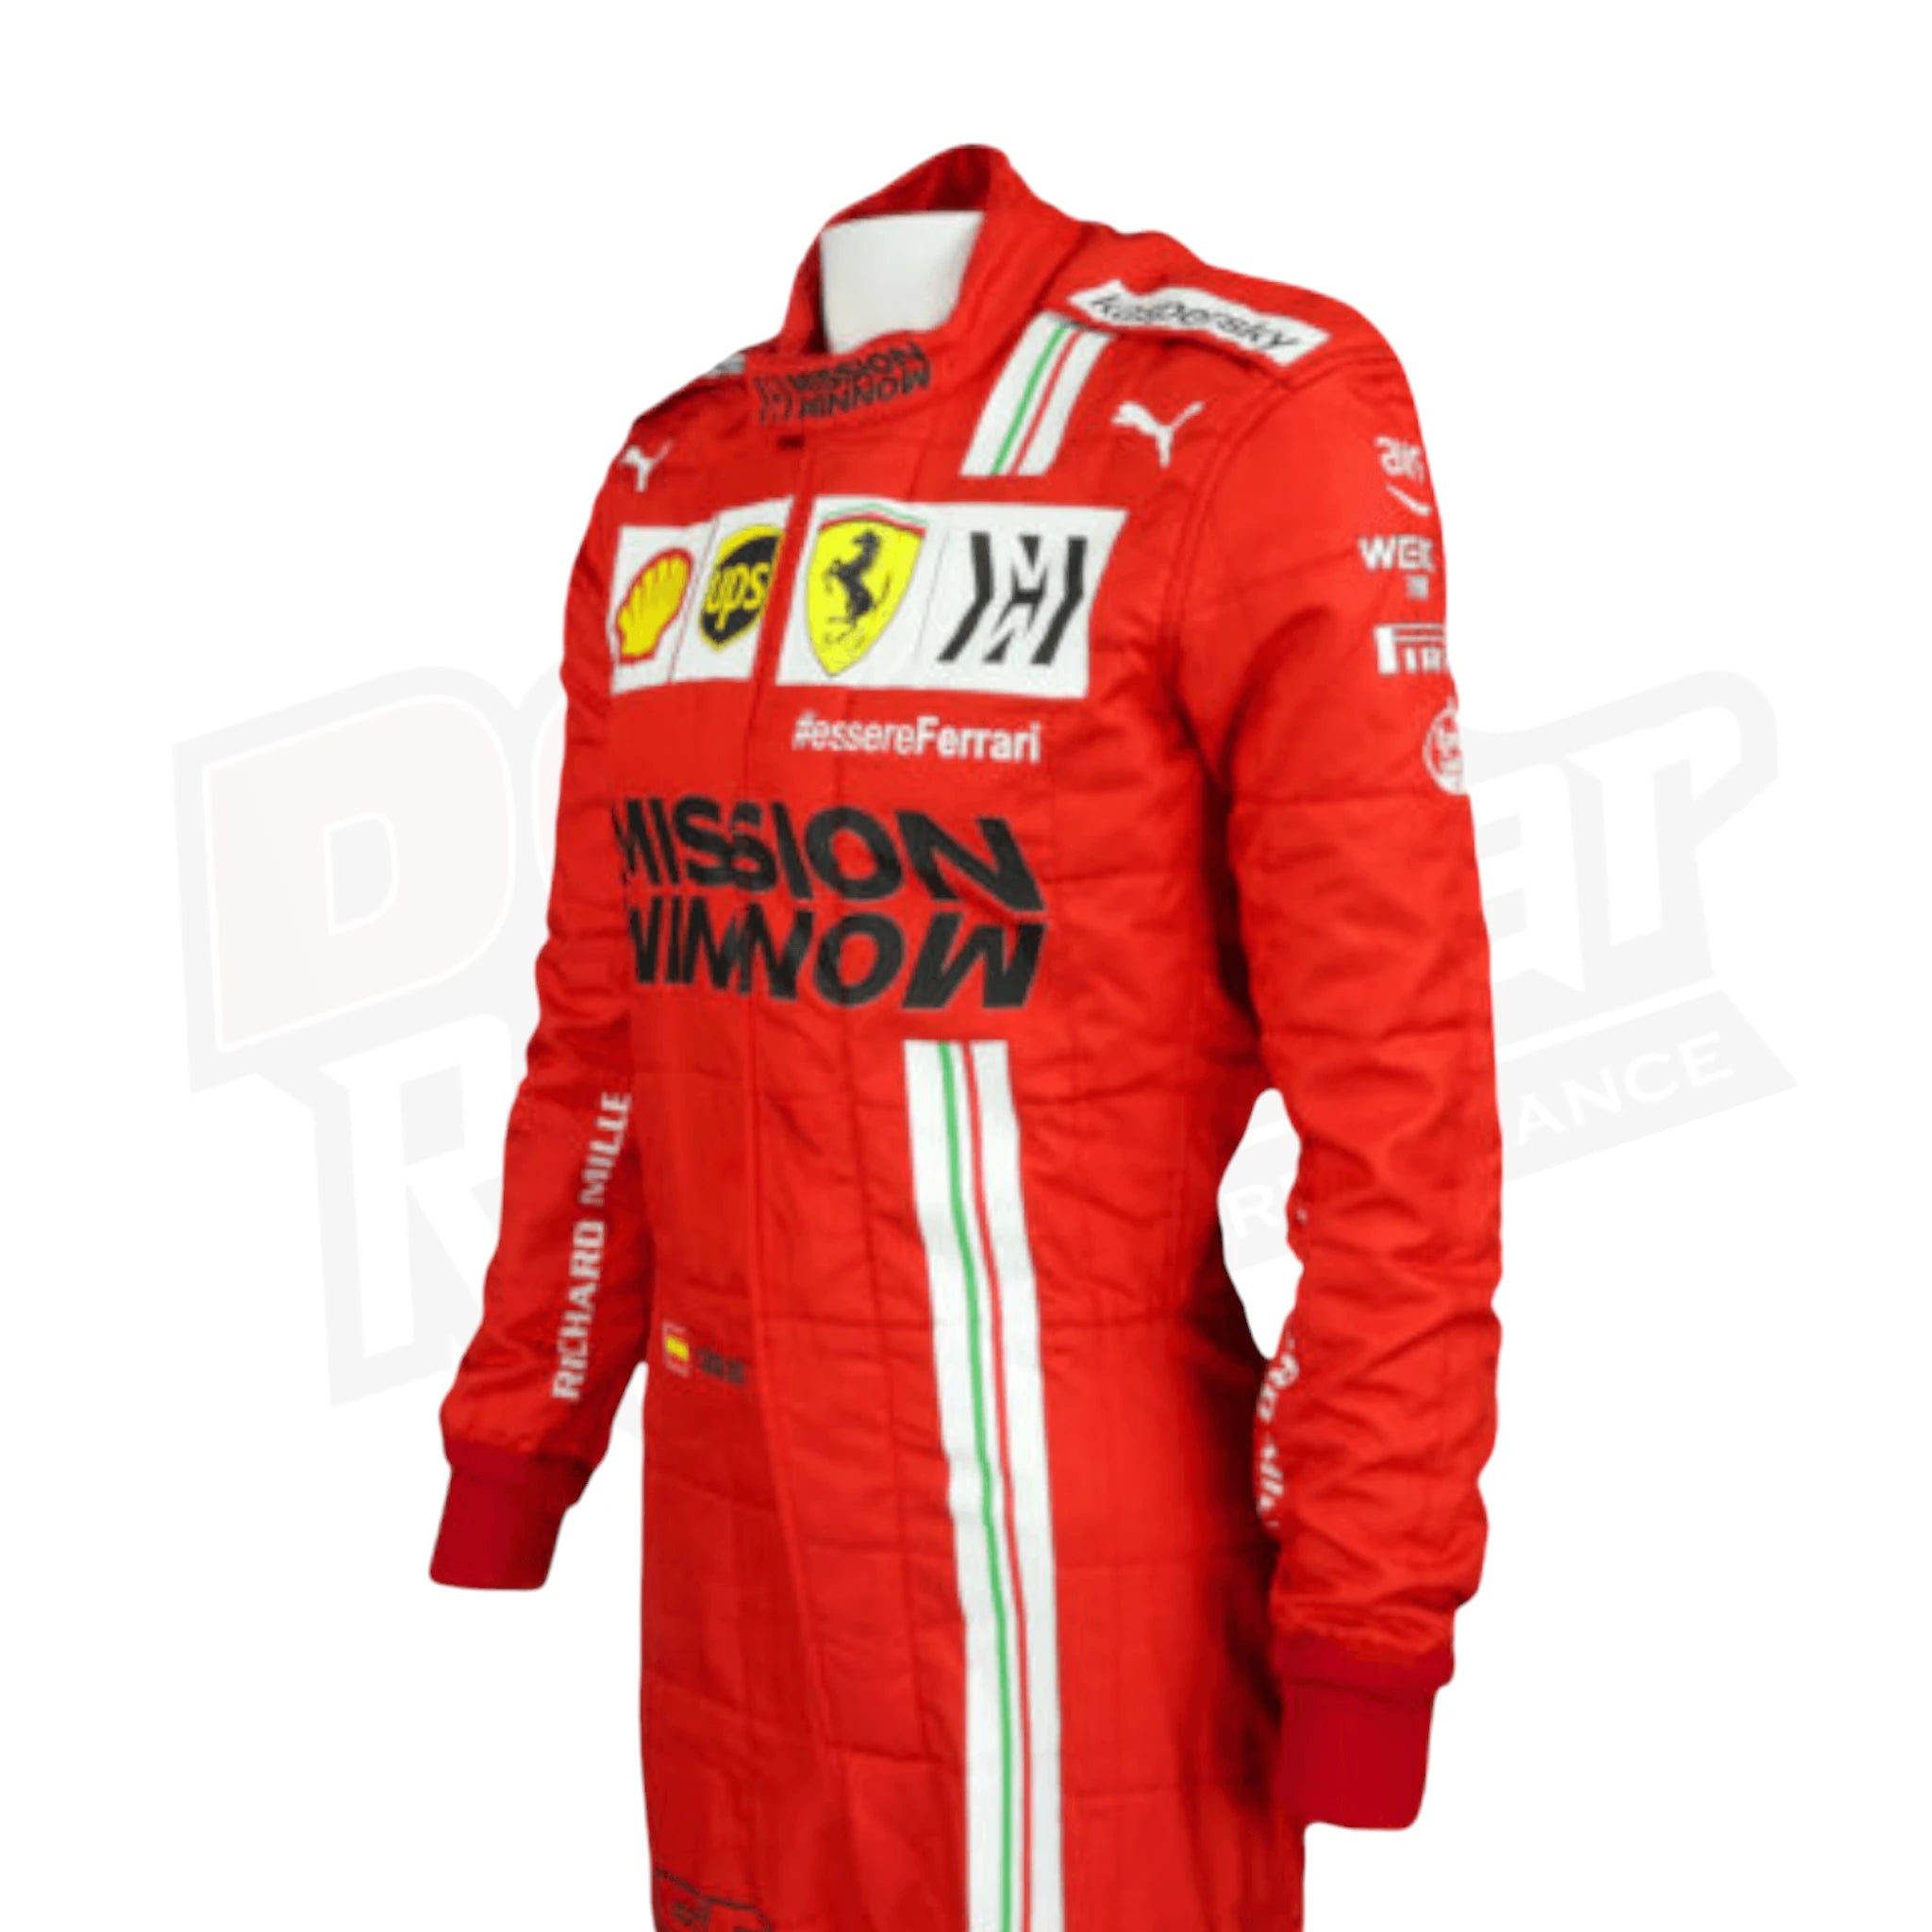 2021 Carlos Sainz Race Scuderia Ferrari F1 Suit